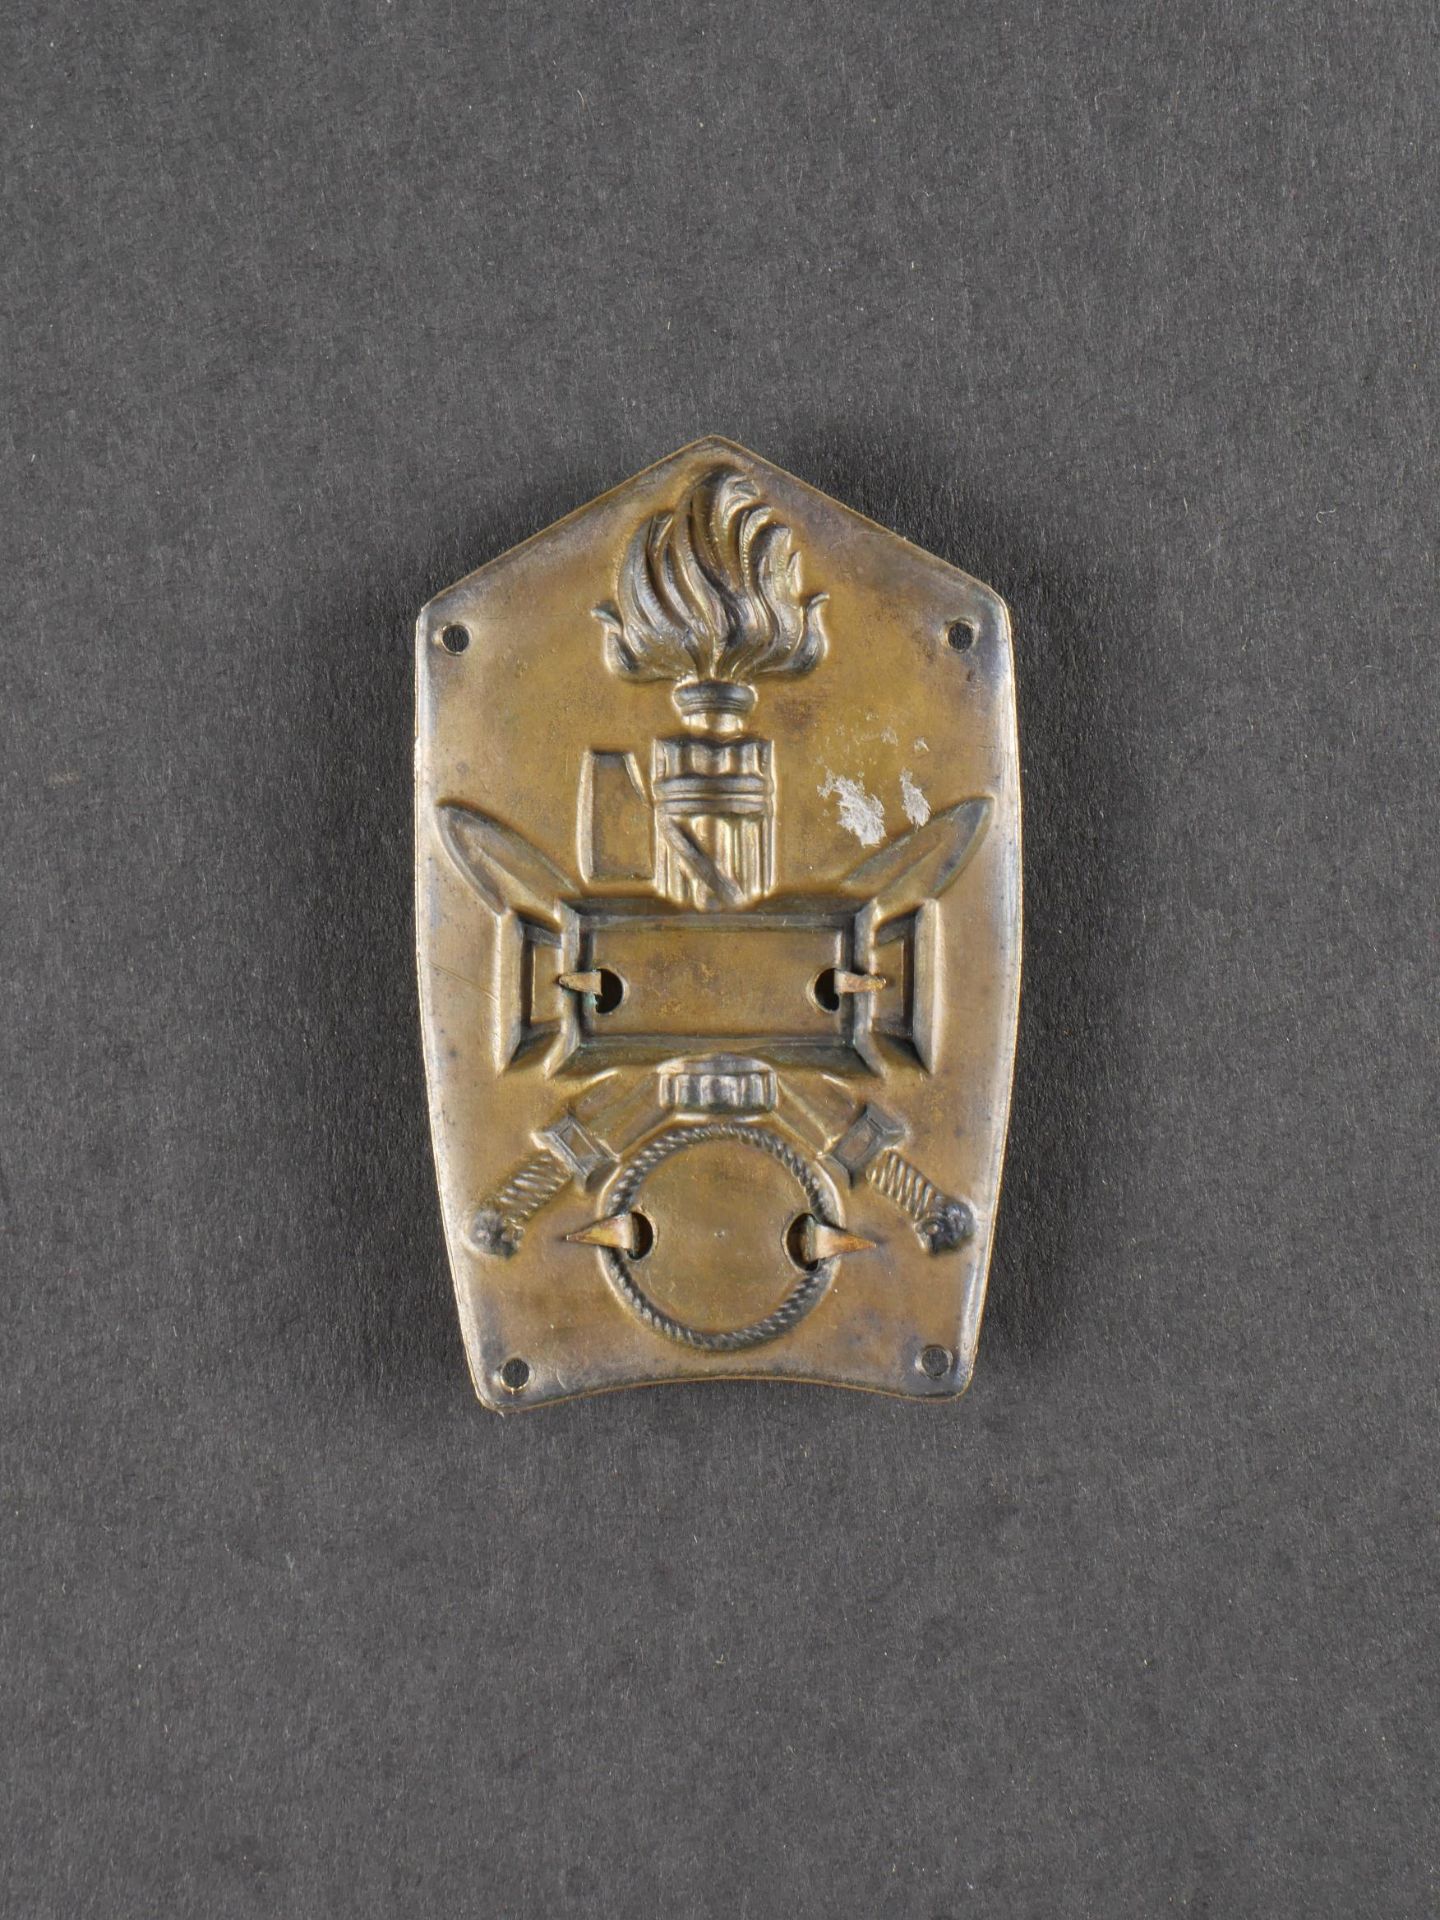 Insigne de calot de la 6eme Legion de Chemises Noires. 6th Black Shirt Legion cap badge. - Image 2 of 2